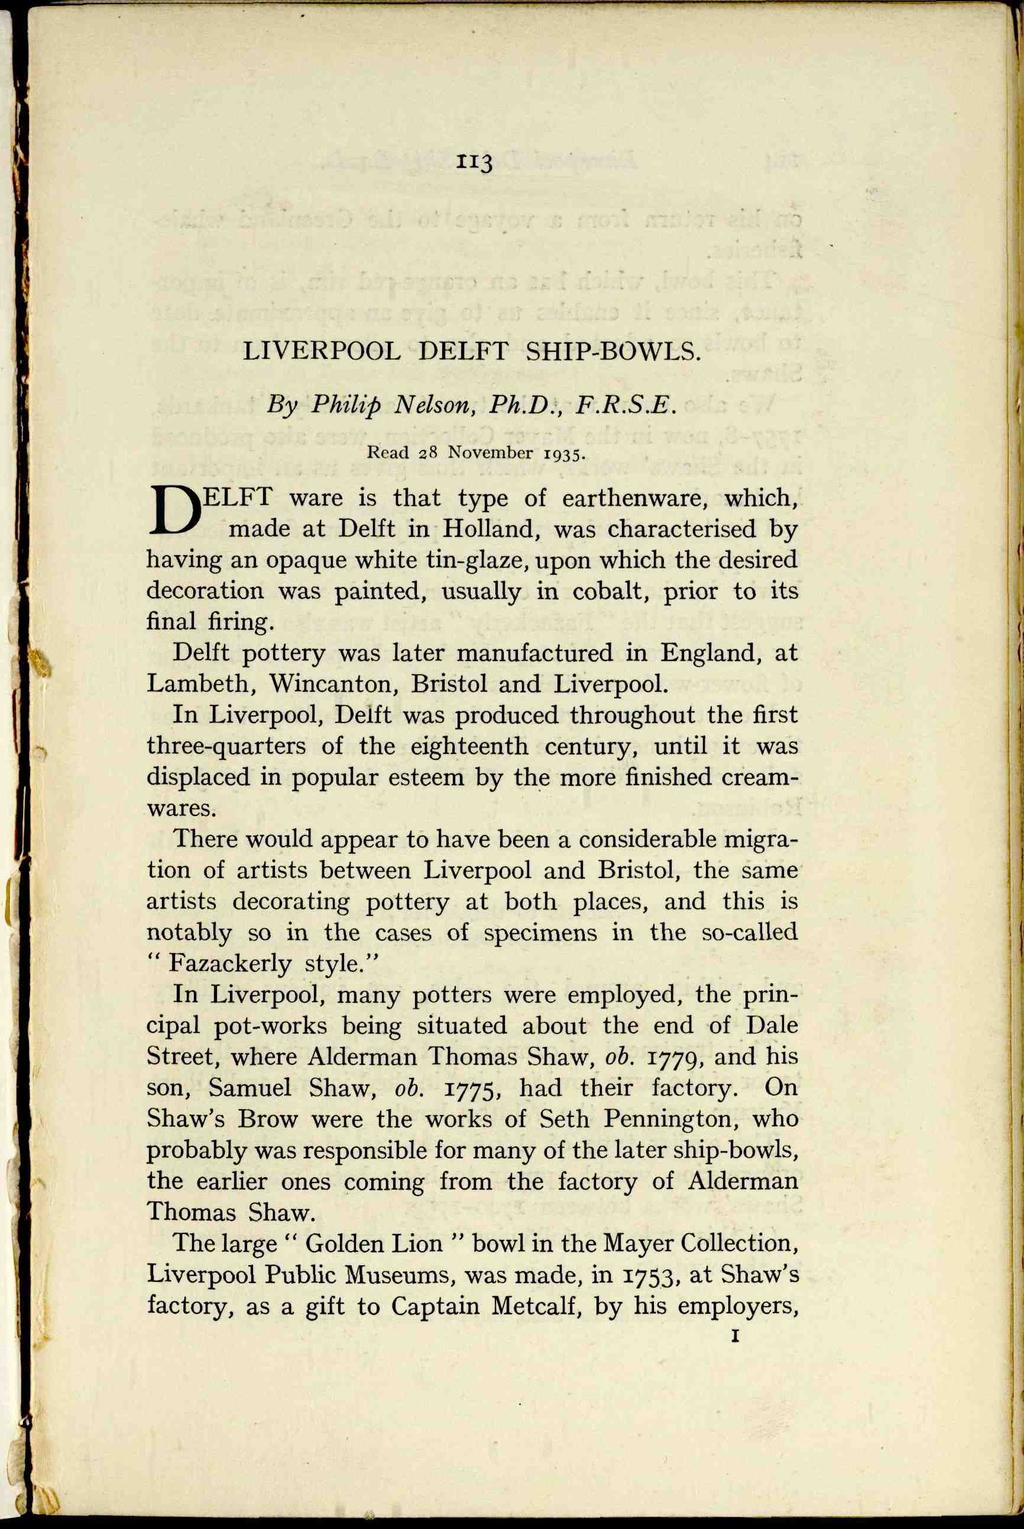 LIVERPOOL DELFT SHIP-BOWLS. By Philip Nelson, Ph.D., F.R.S.E. Read 28 November 1935.